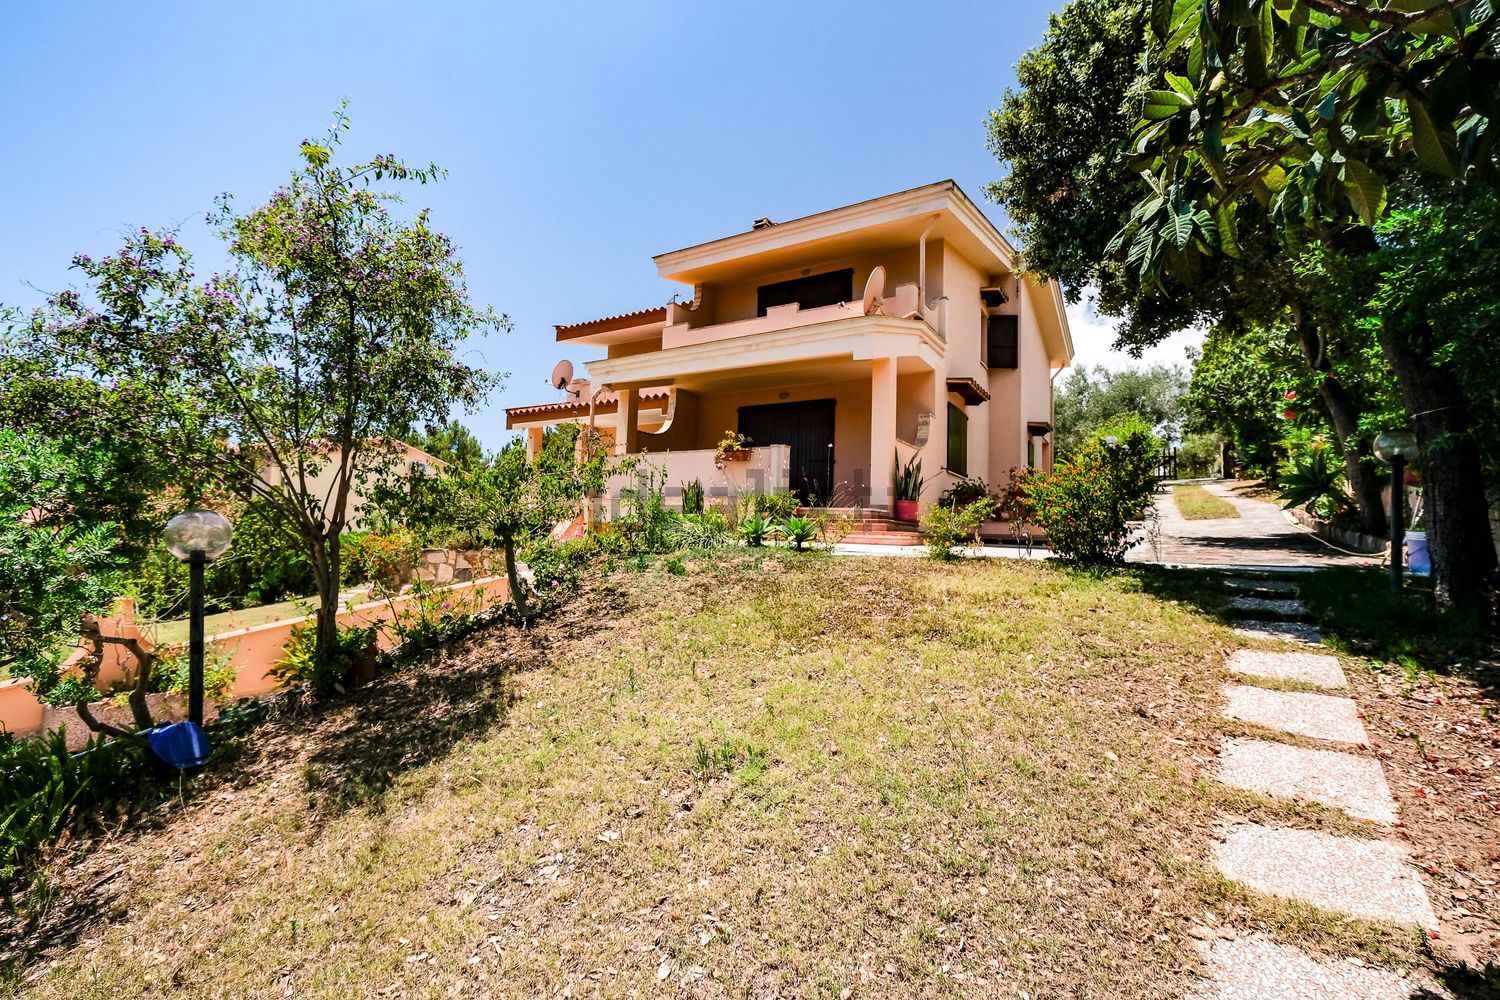 Villa Bifamiliare in vendita a Villaputzu, 8 locali, prezzo € 270.000 | CambioCasa.it